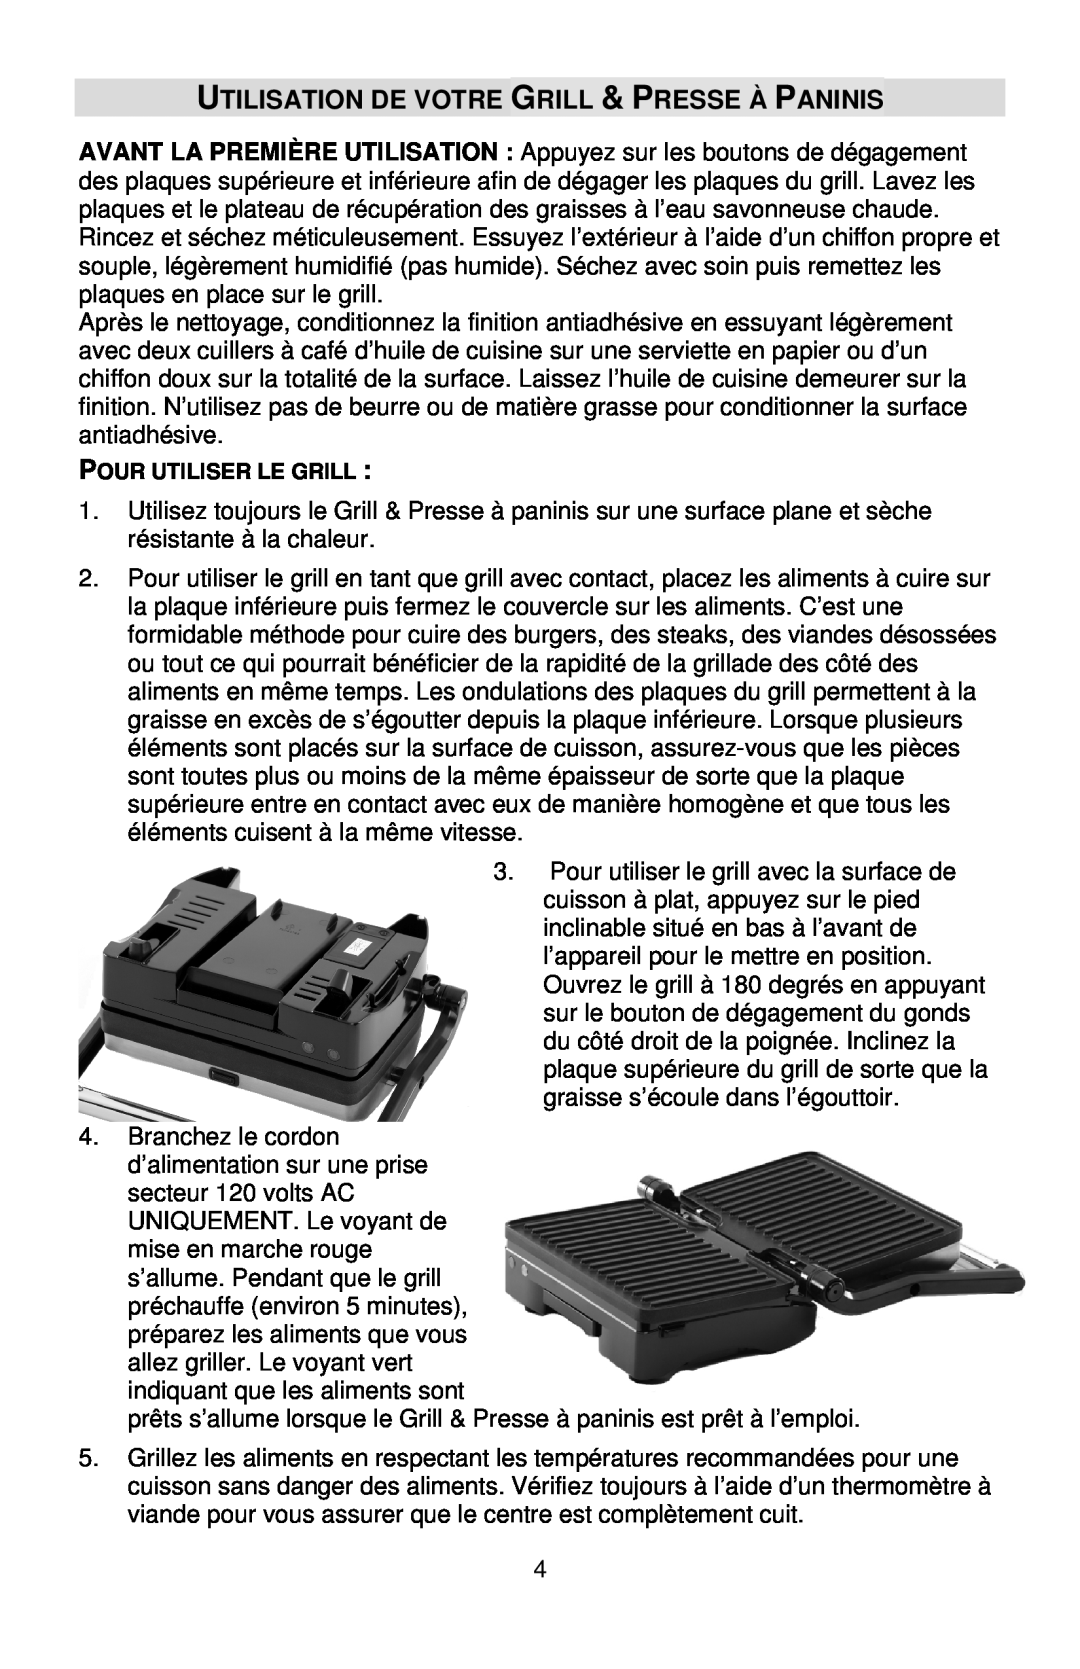 West Bend L5789, 6113 instruction manual Utilisation De Votre Grill & Presse À Paninis 